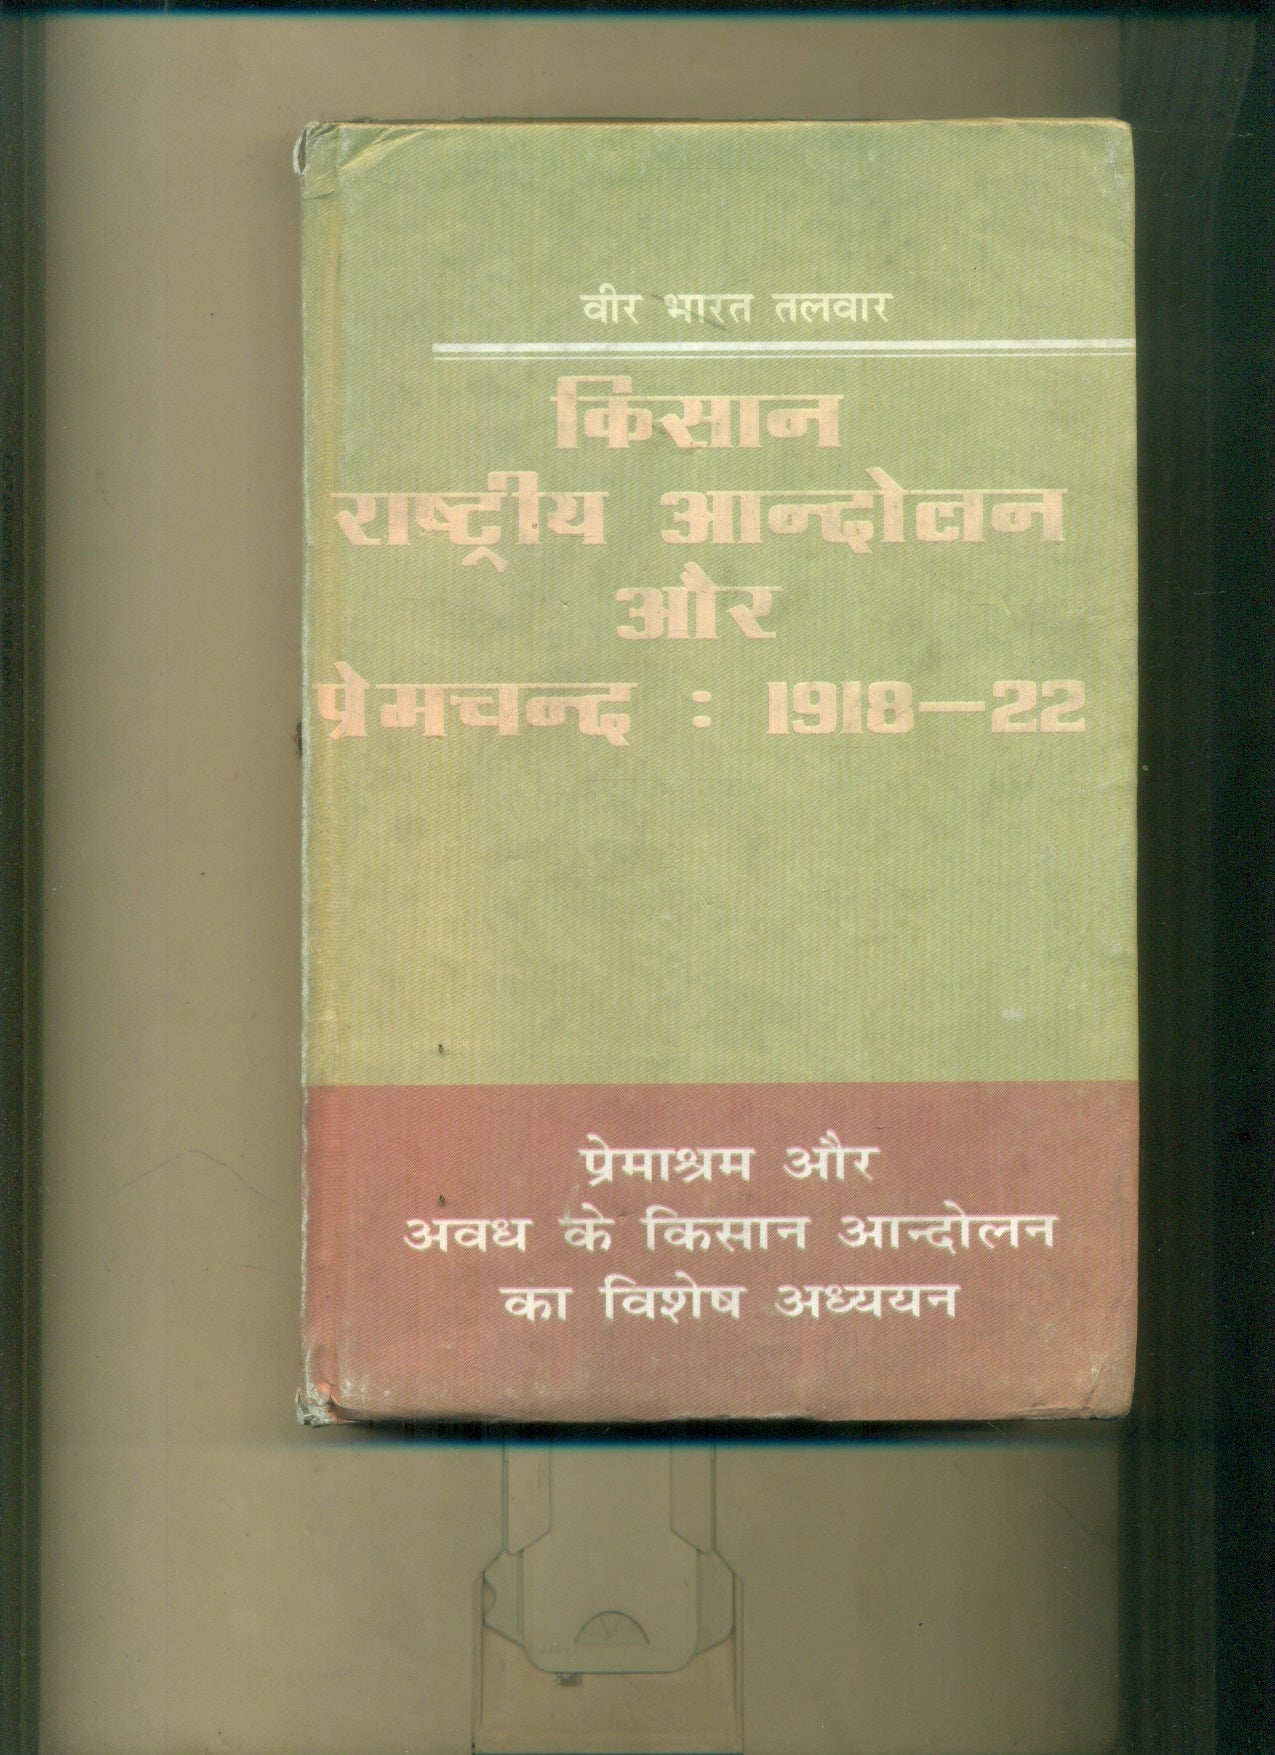 Kisan Rashtriya Aandolan Aur Premchand :191822